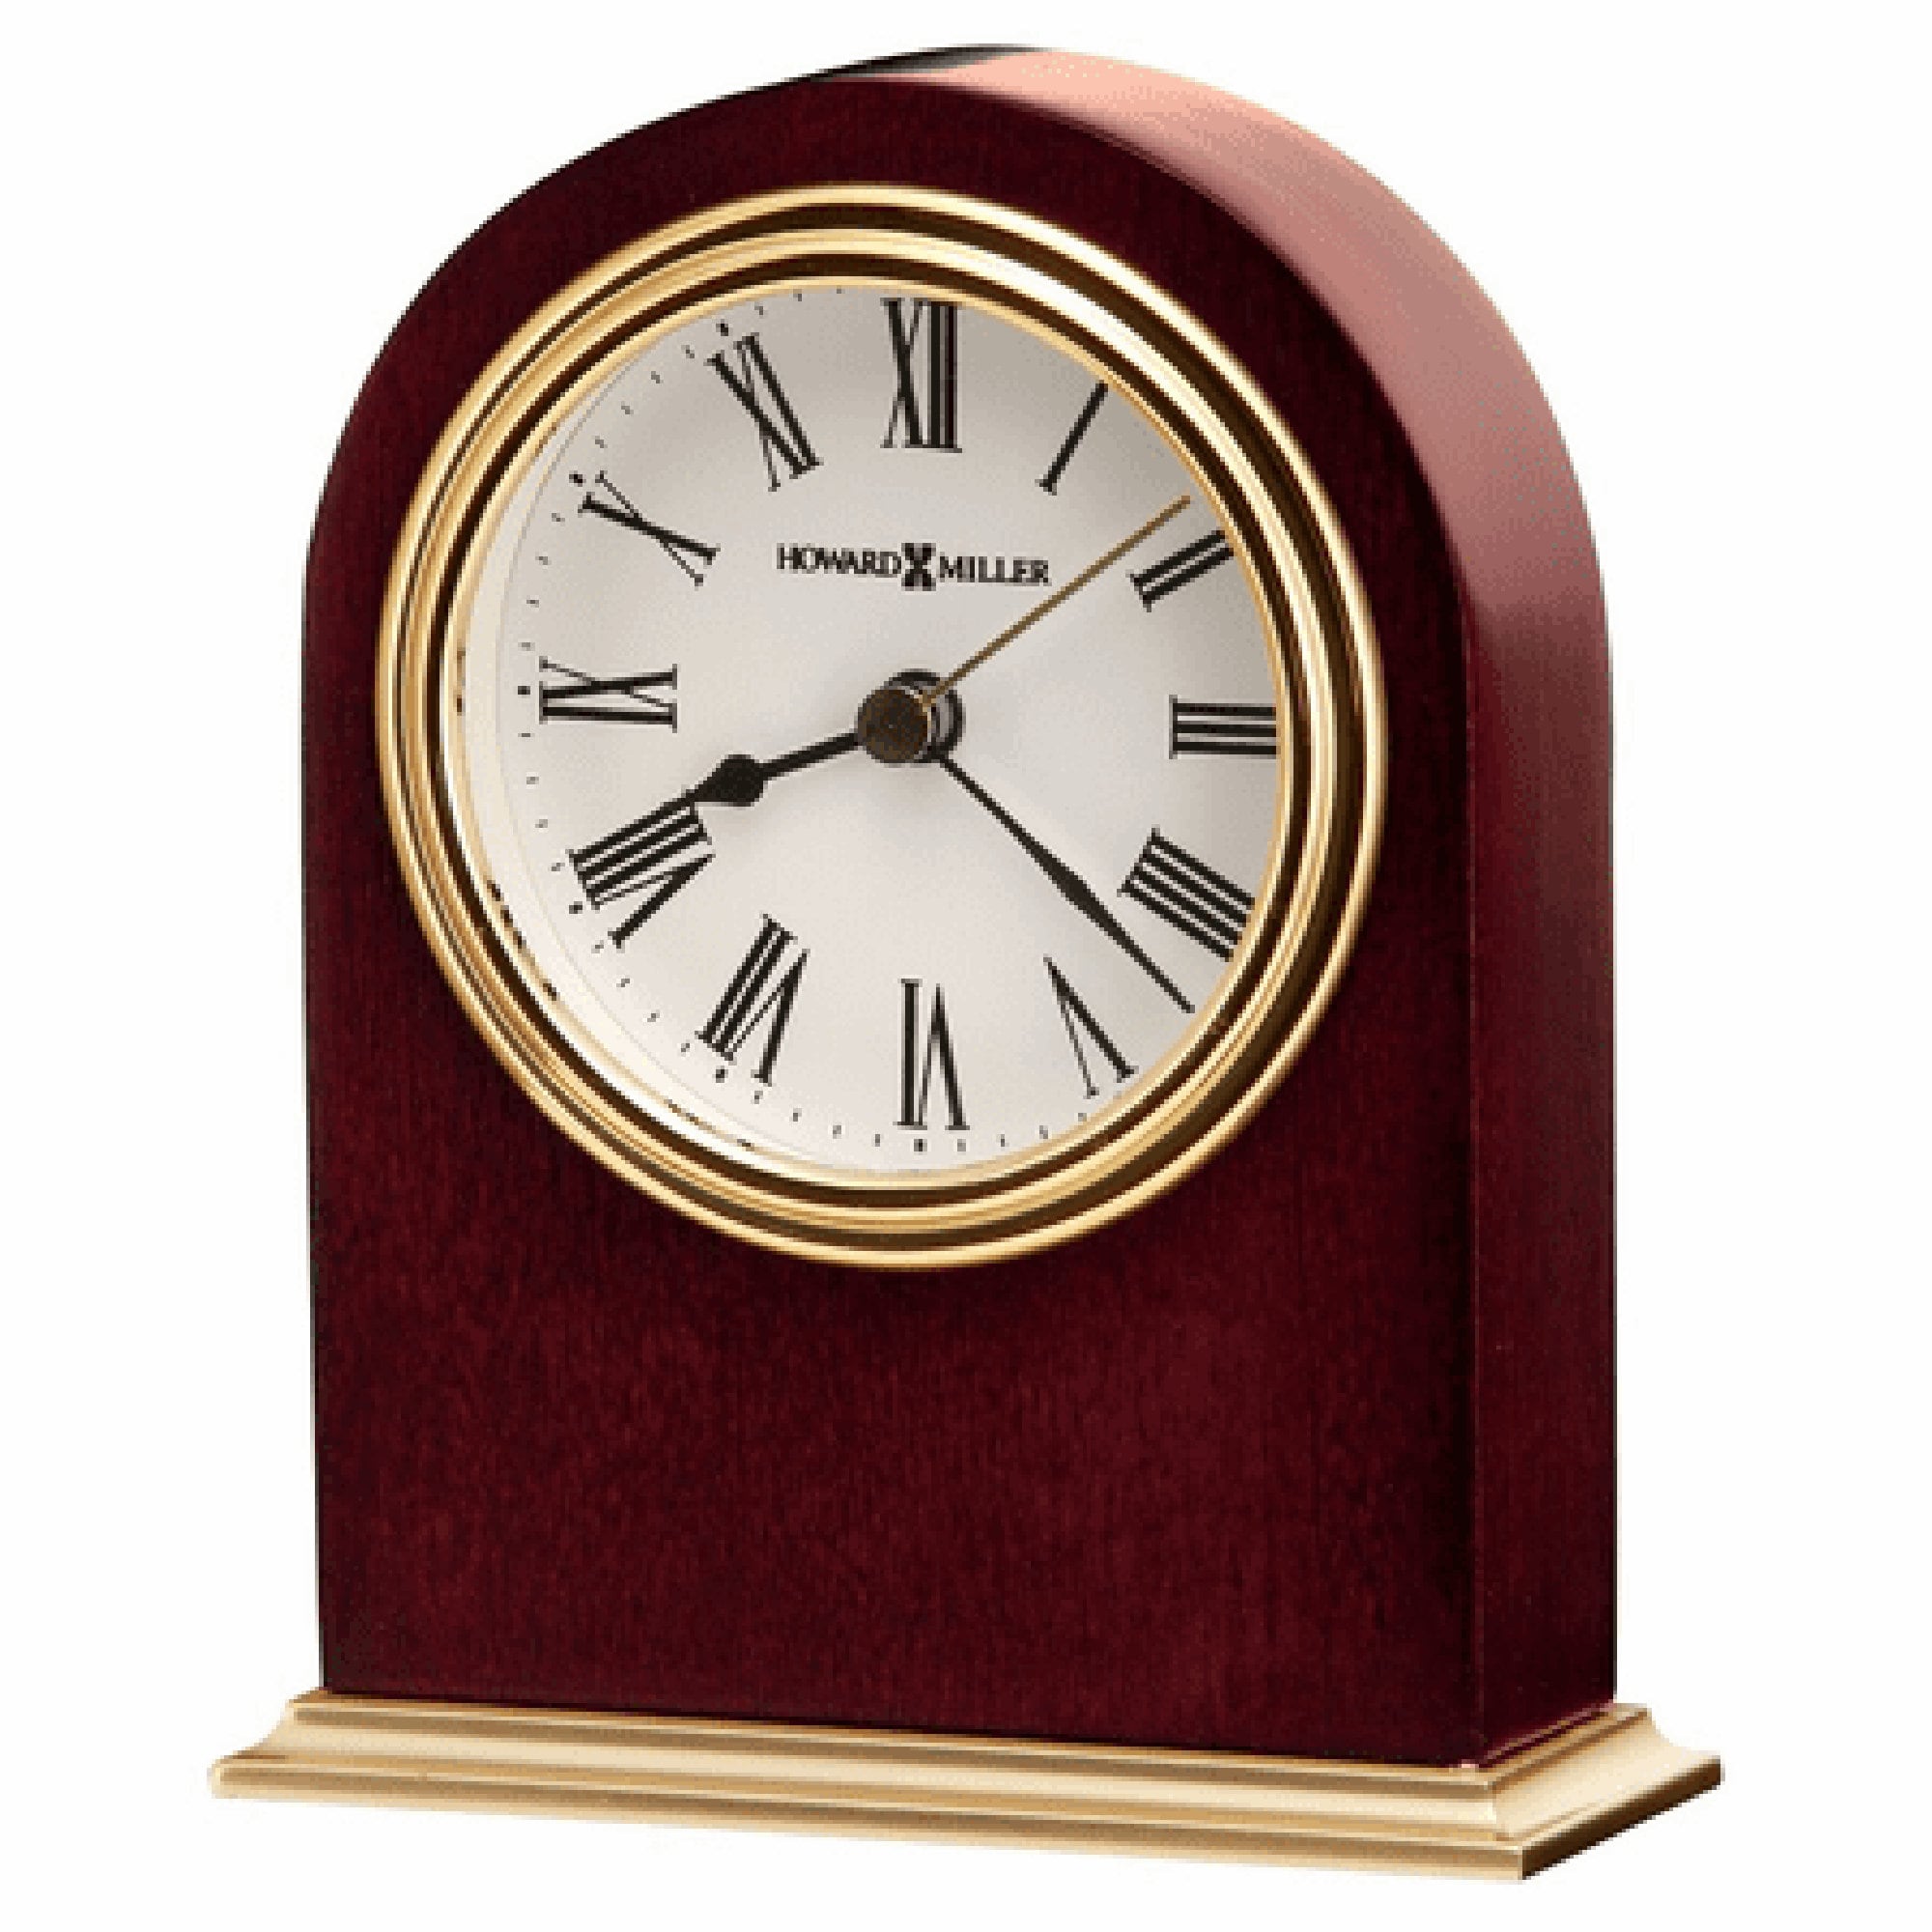 Schreibtisch Uhr beten Hände Design - personalisierte rote Erder  Schreibtisch Uhr - Holz Mantel Stück Uhr - Laser graviert Schreibtisch Uhr  